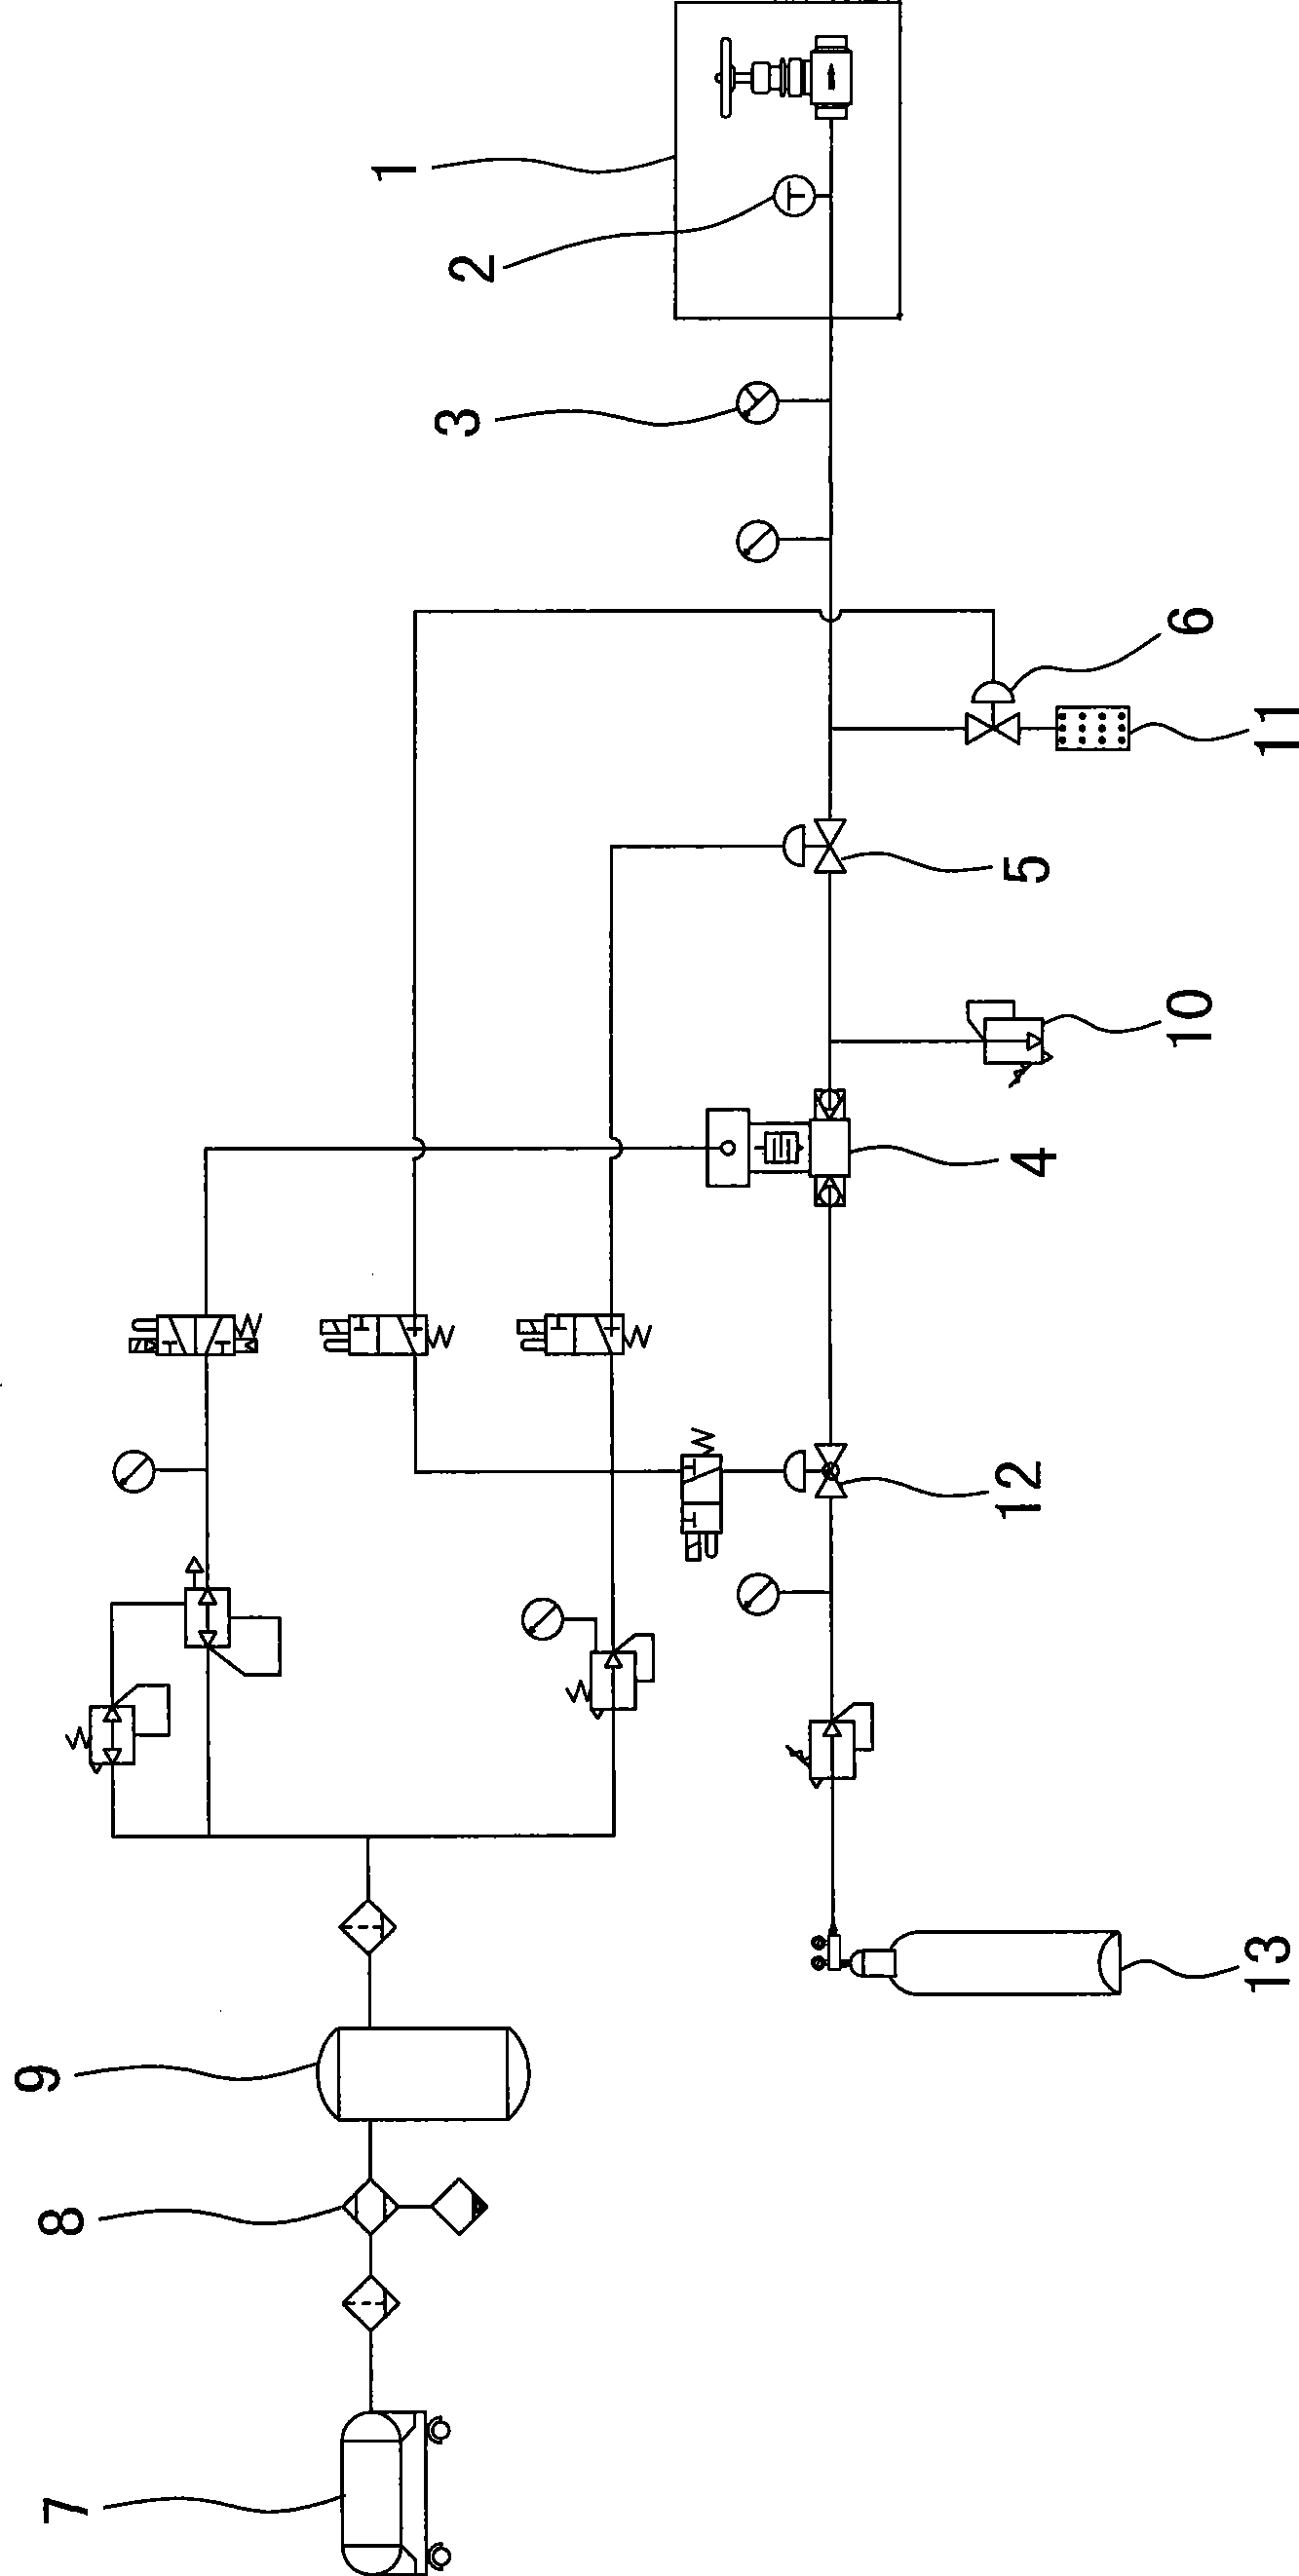 Pressure test method for power station valve